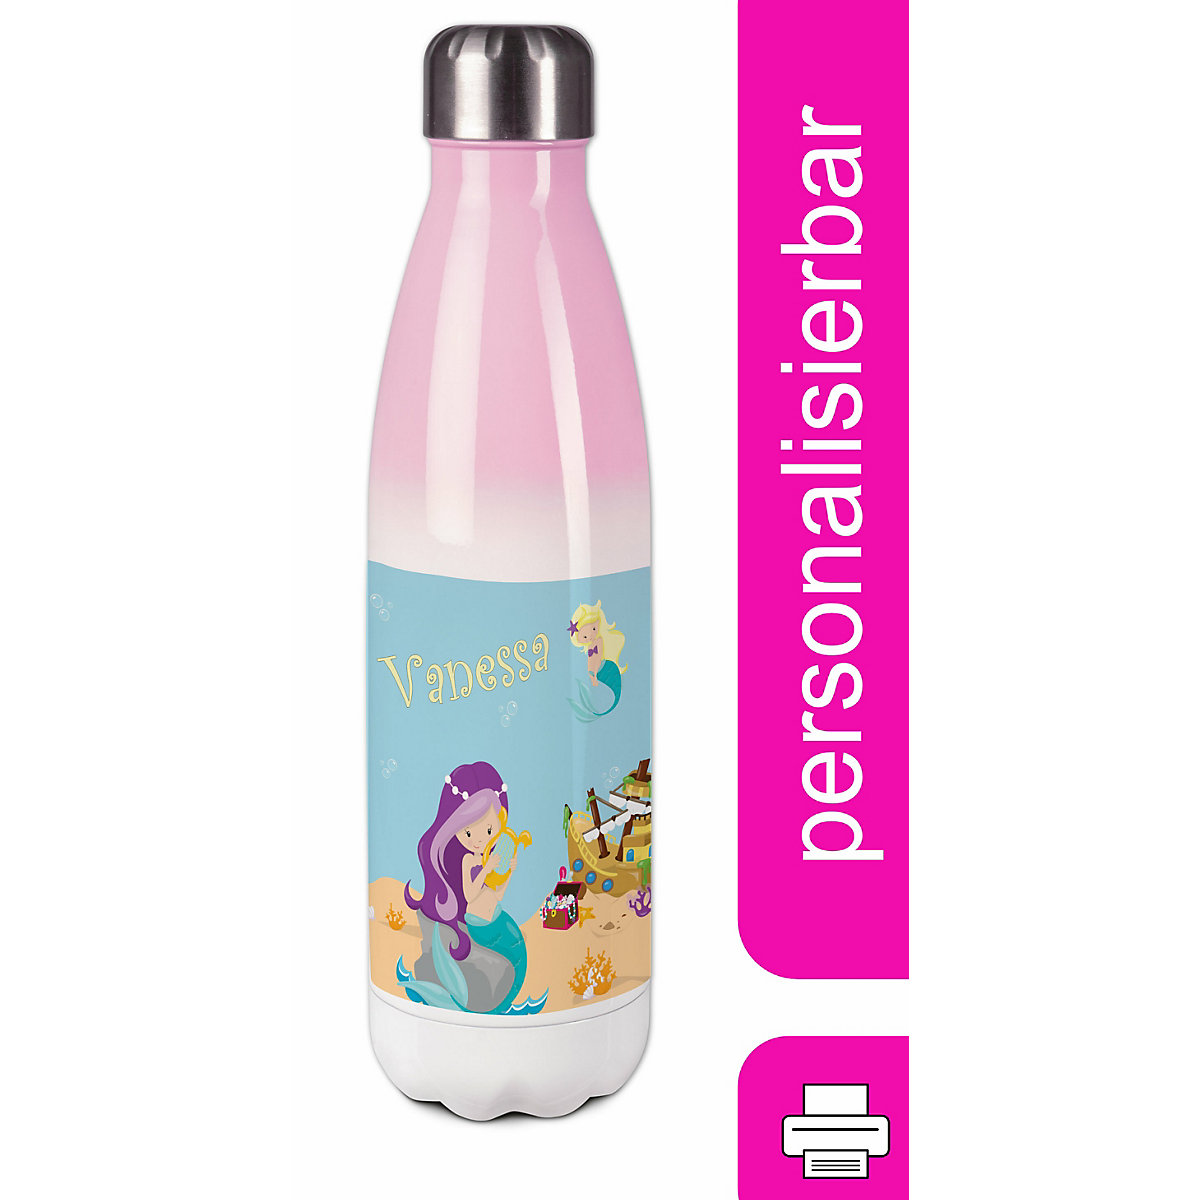 CreaDesign Edelstahl Kinder Thermoflasche / Trinkflasche bunt Meerjungfrau Spülmaschinenfest Auslaufsicher Bruchfest Doppelwandig Für Heißgetränke geeignet Mit Deckel Isoliert